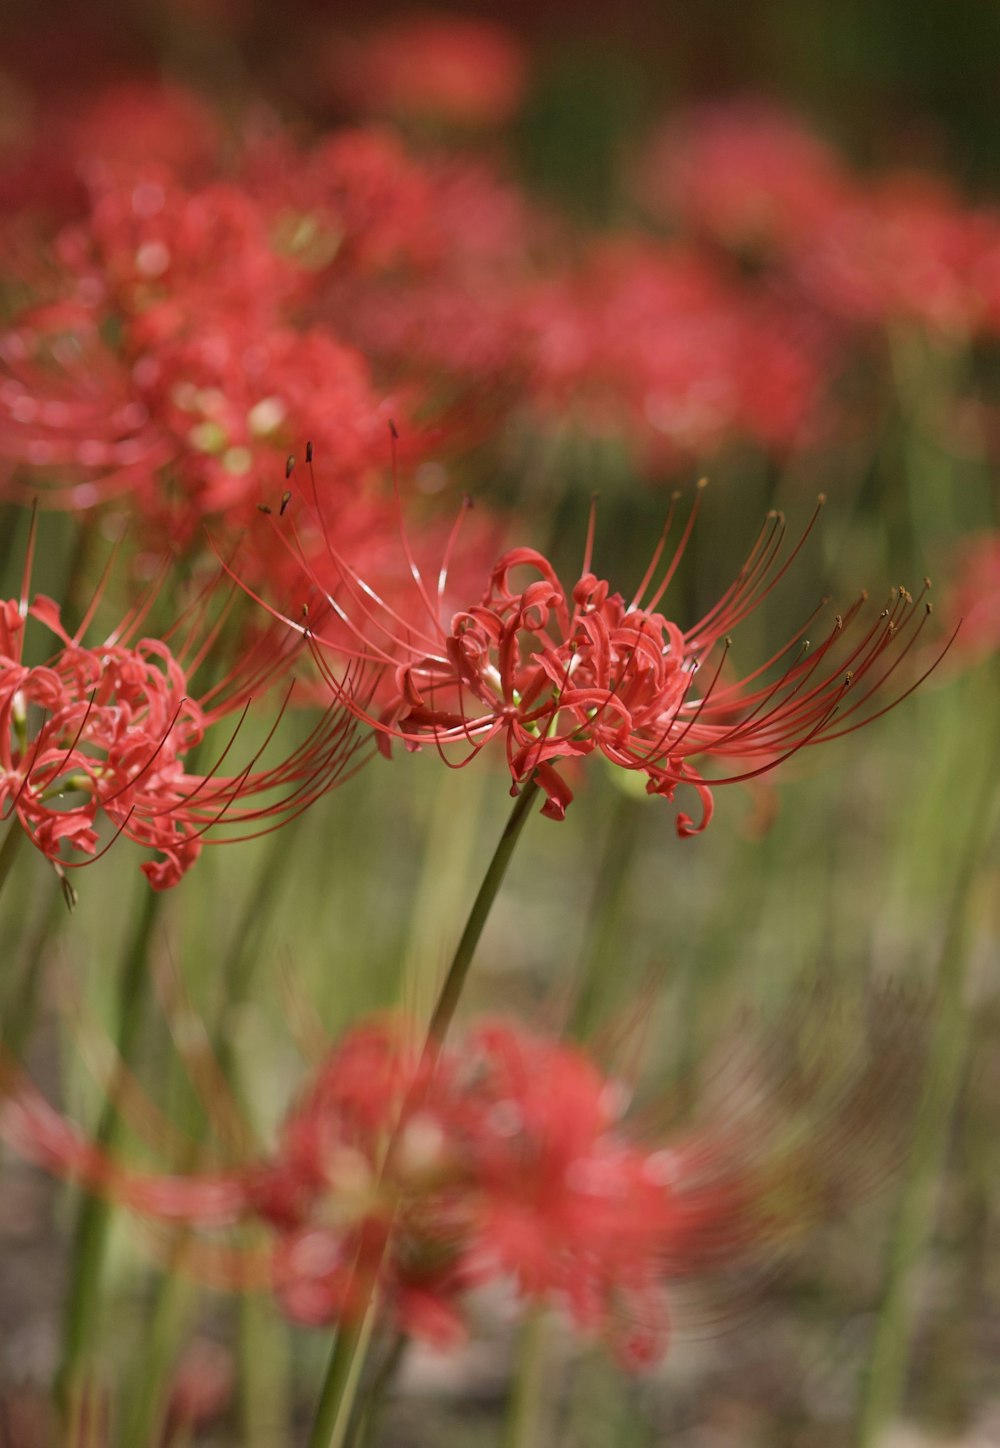 um close up de um ramo de flores vermelhas